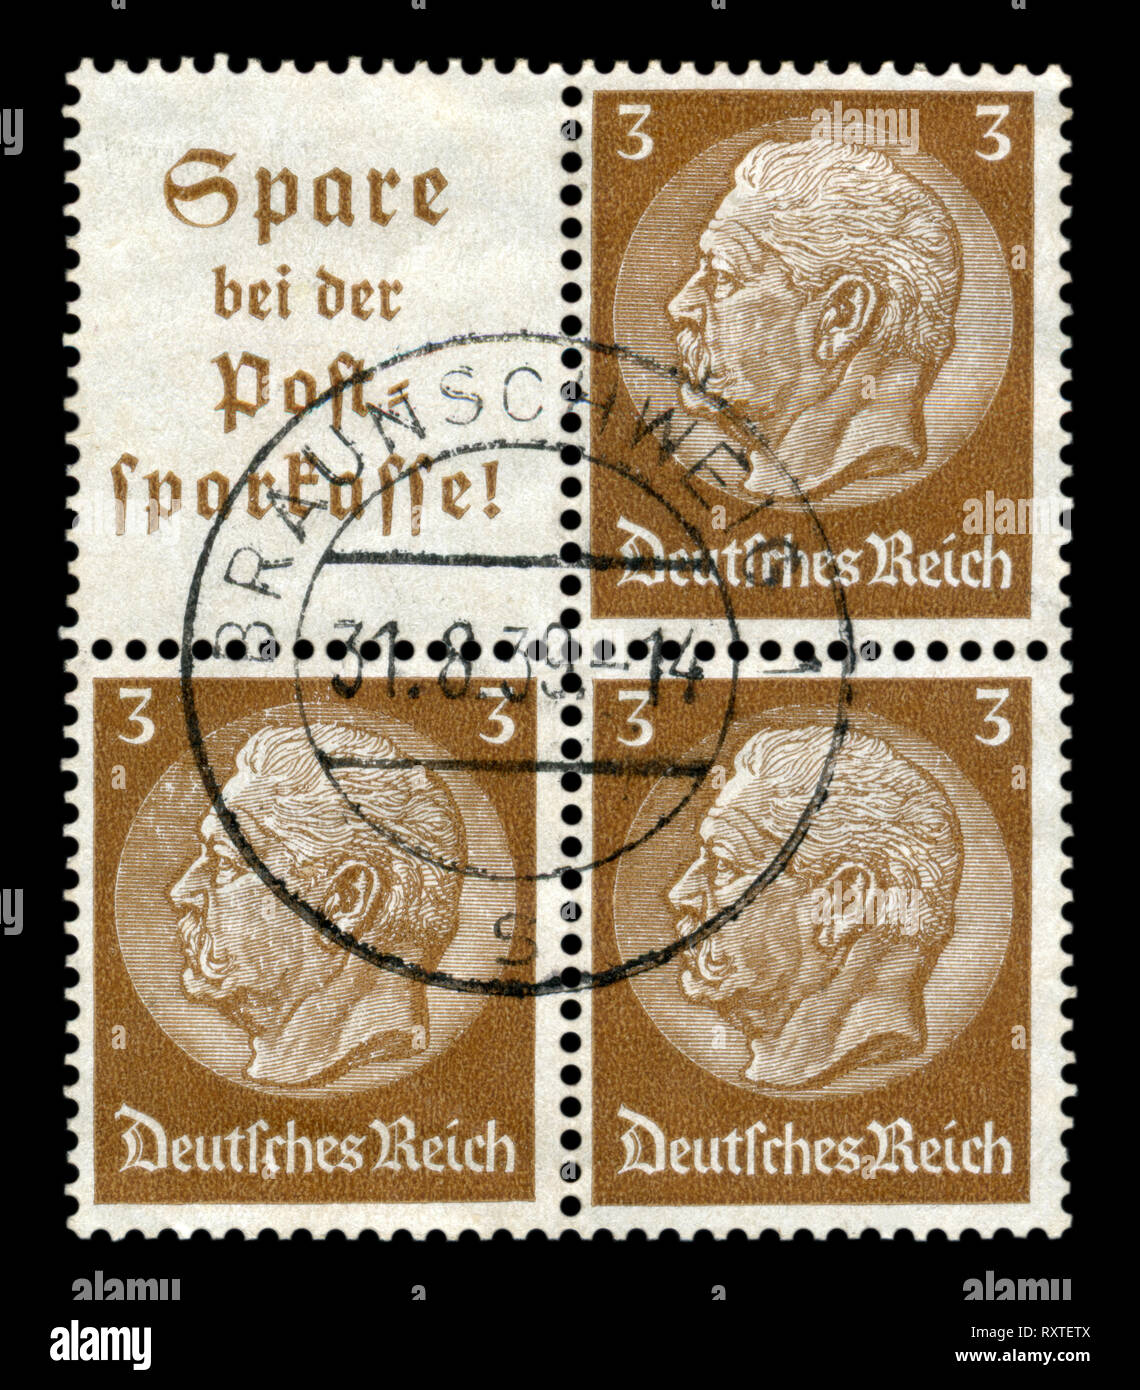 German historical block of three stamps: Paul von Hindenburg-series medallions 1933-1936 issue, Braunschweig postmark 1938, Germany, the Third Reich Stock Photo